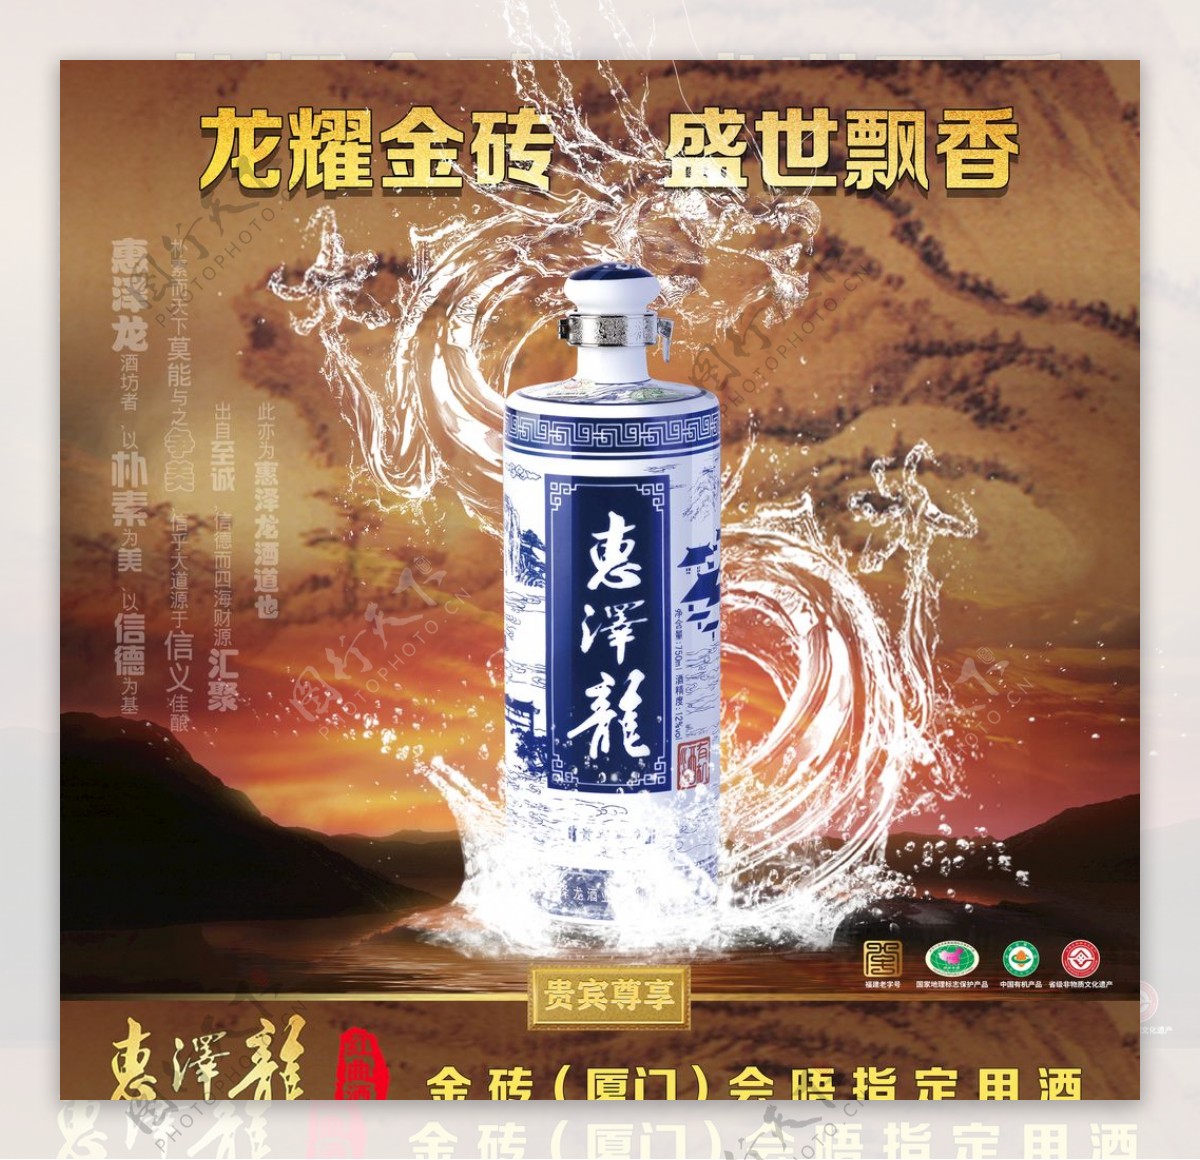 水龙中国画酒广告图片